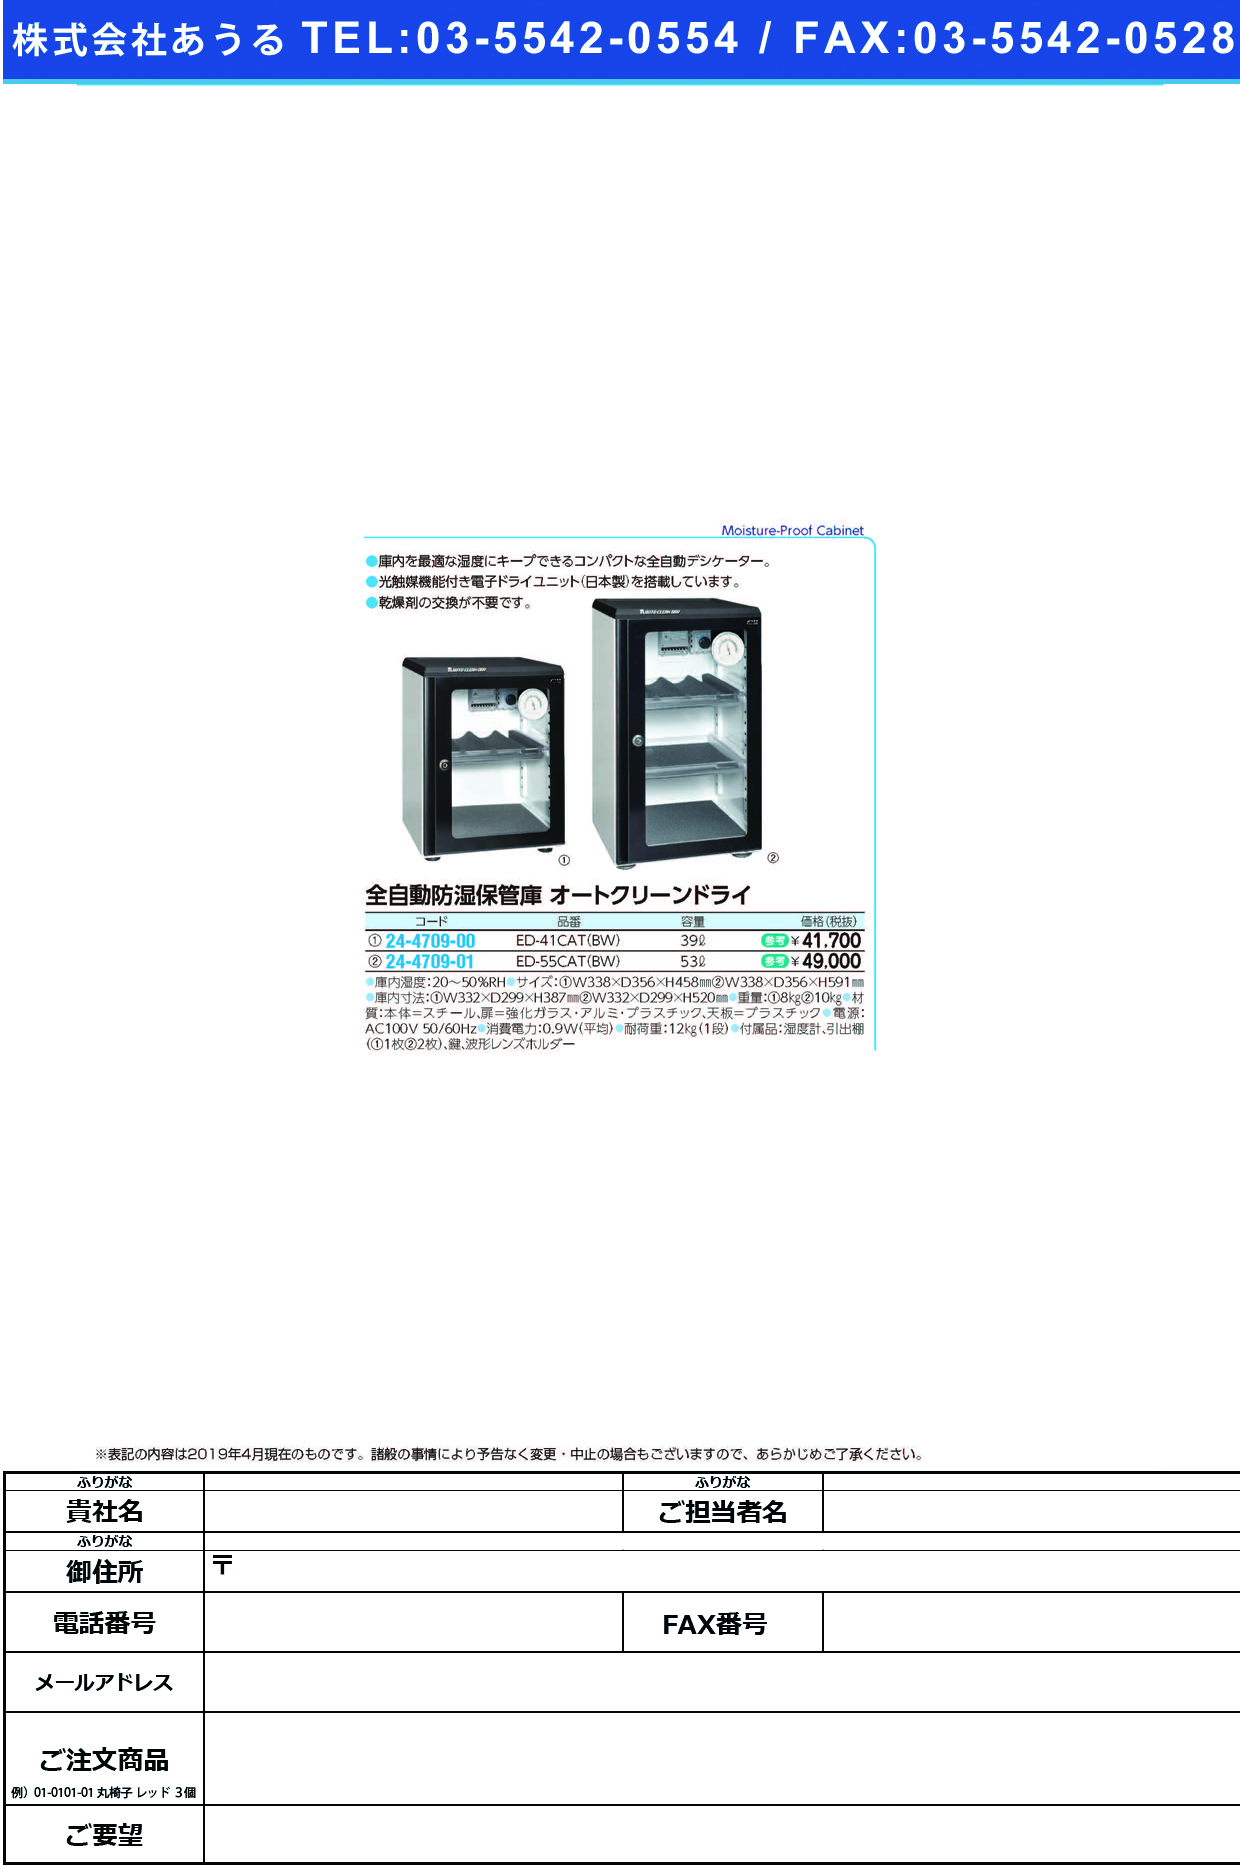 (24-4709-01)オートクリーンドライ ED-55CAT(BW) ｵｰﾄﾄﾞﾗｲ【1台単位】【2019年カタログ商品】